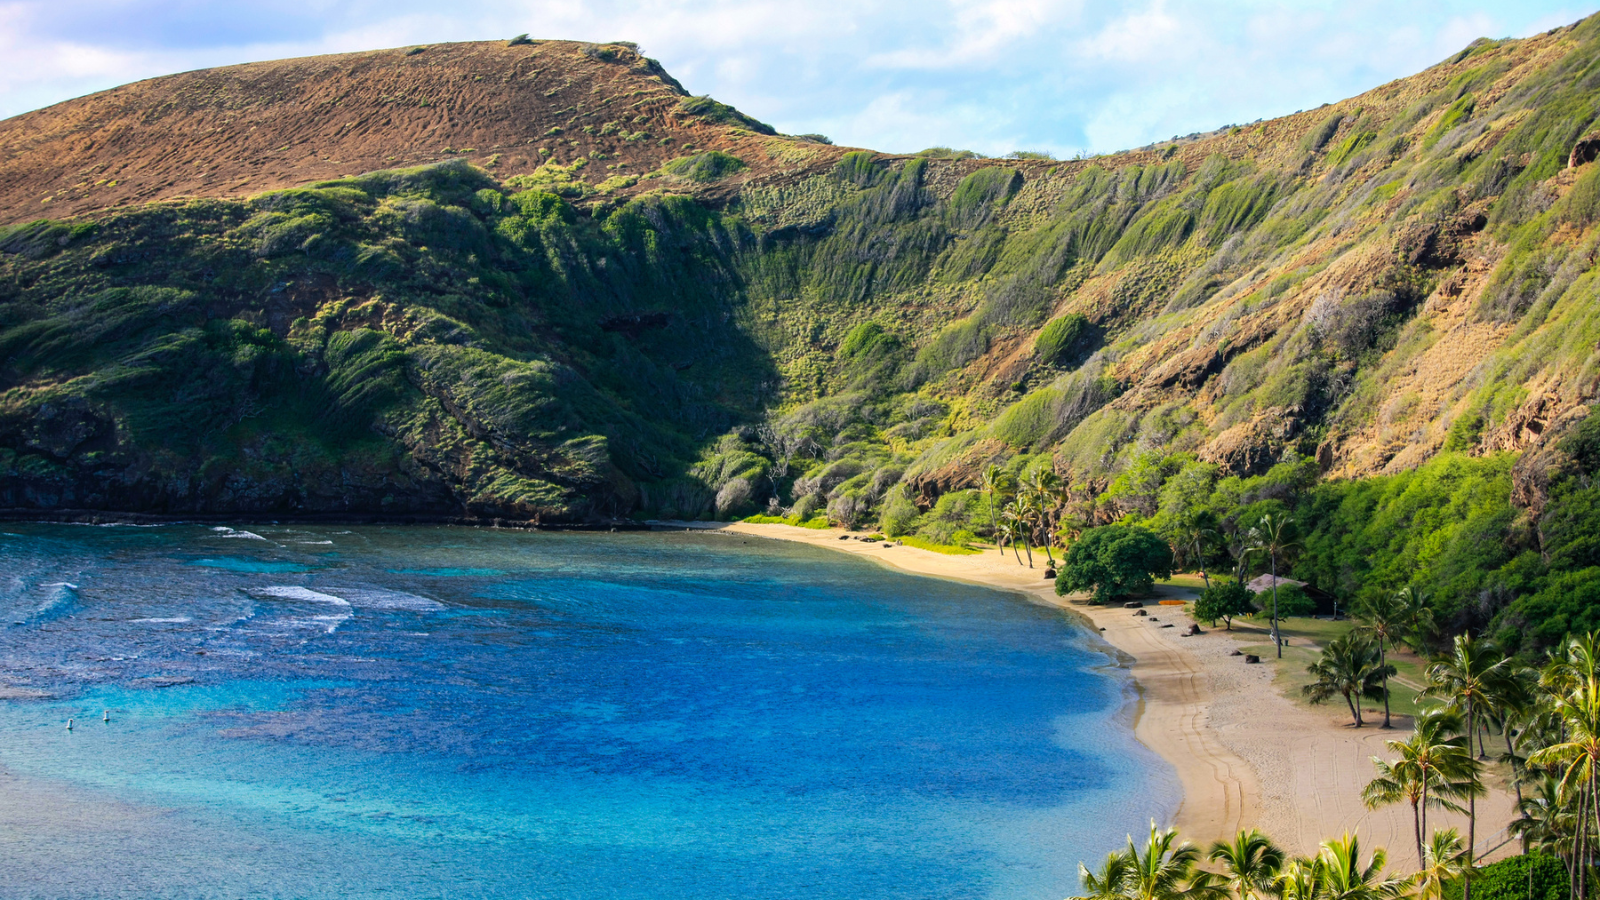 A beach in Polynesia, similar to the movie Moana.